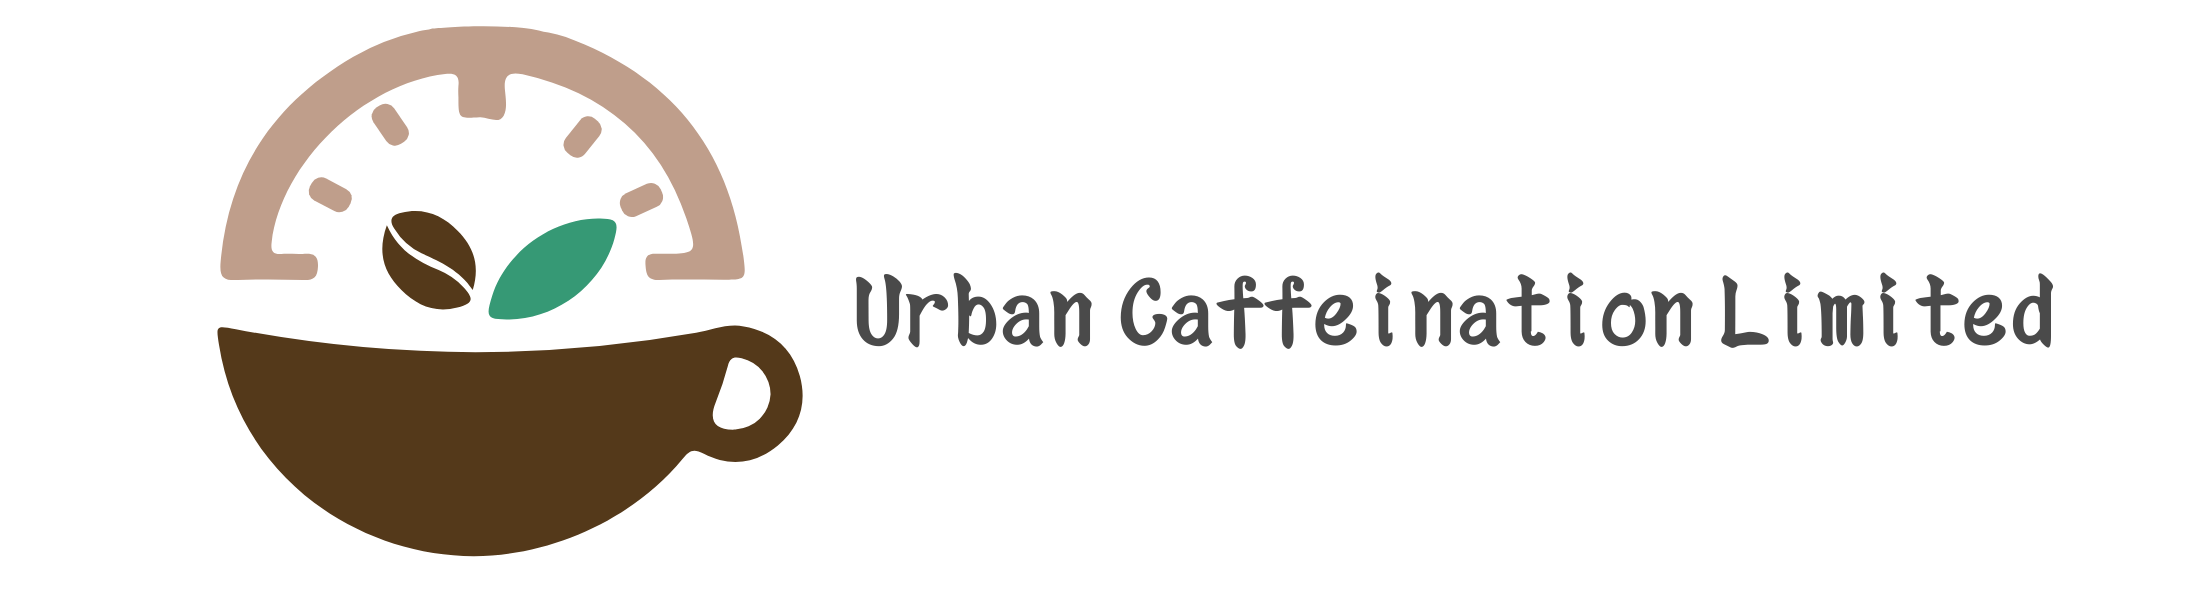 Urban Caffeination Limited